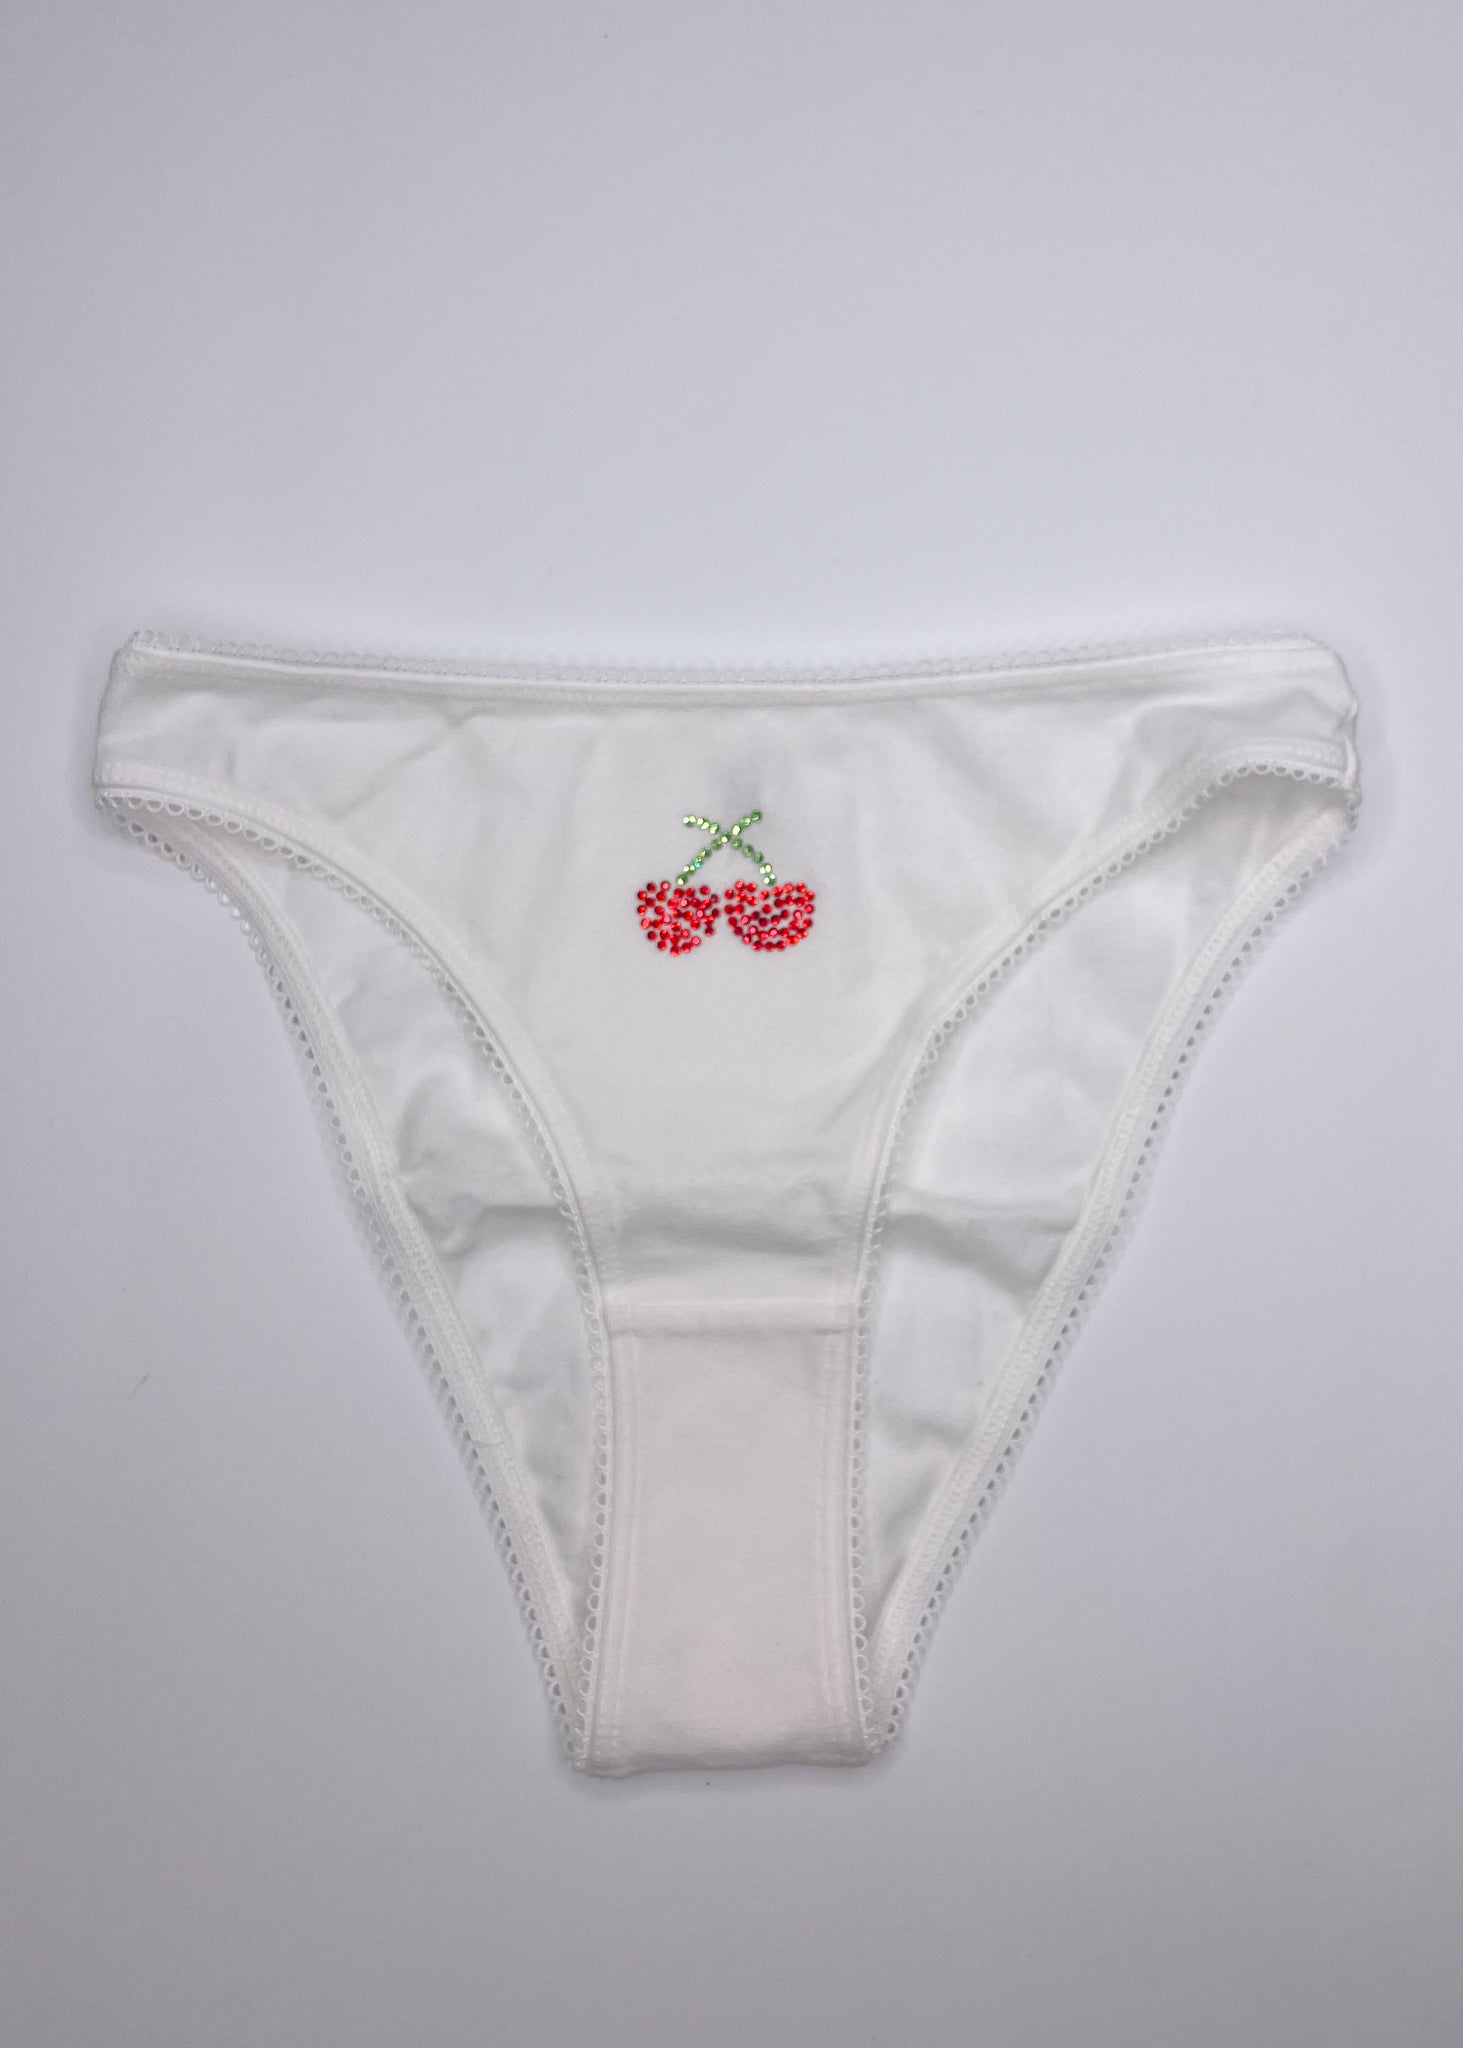 Bedazzled Cherry Undies – Poppy Undies